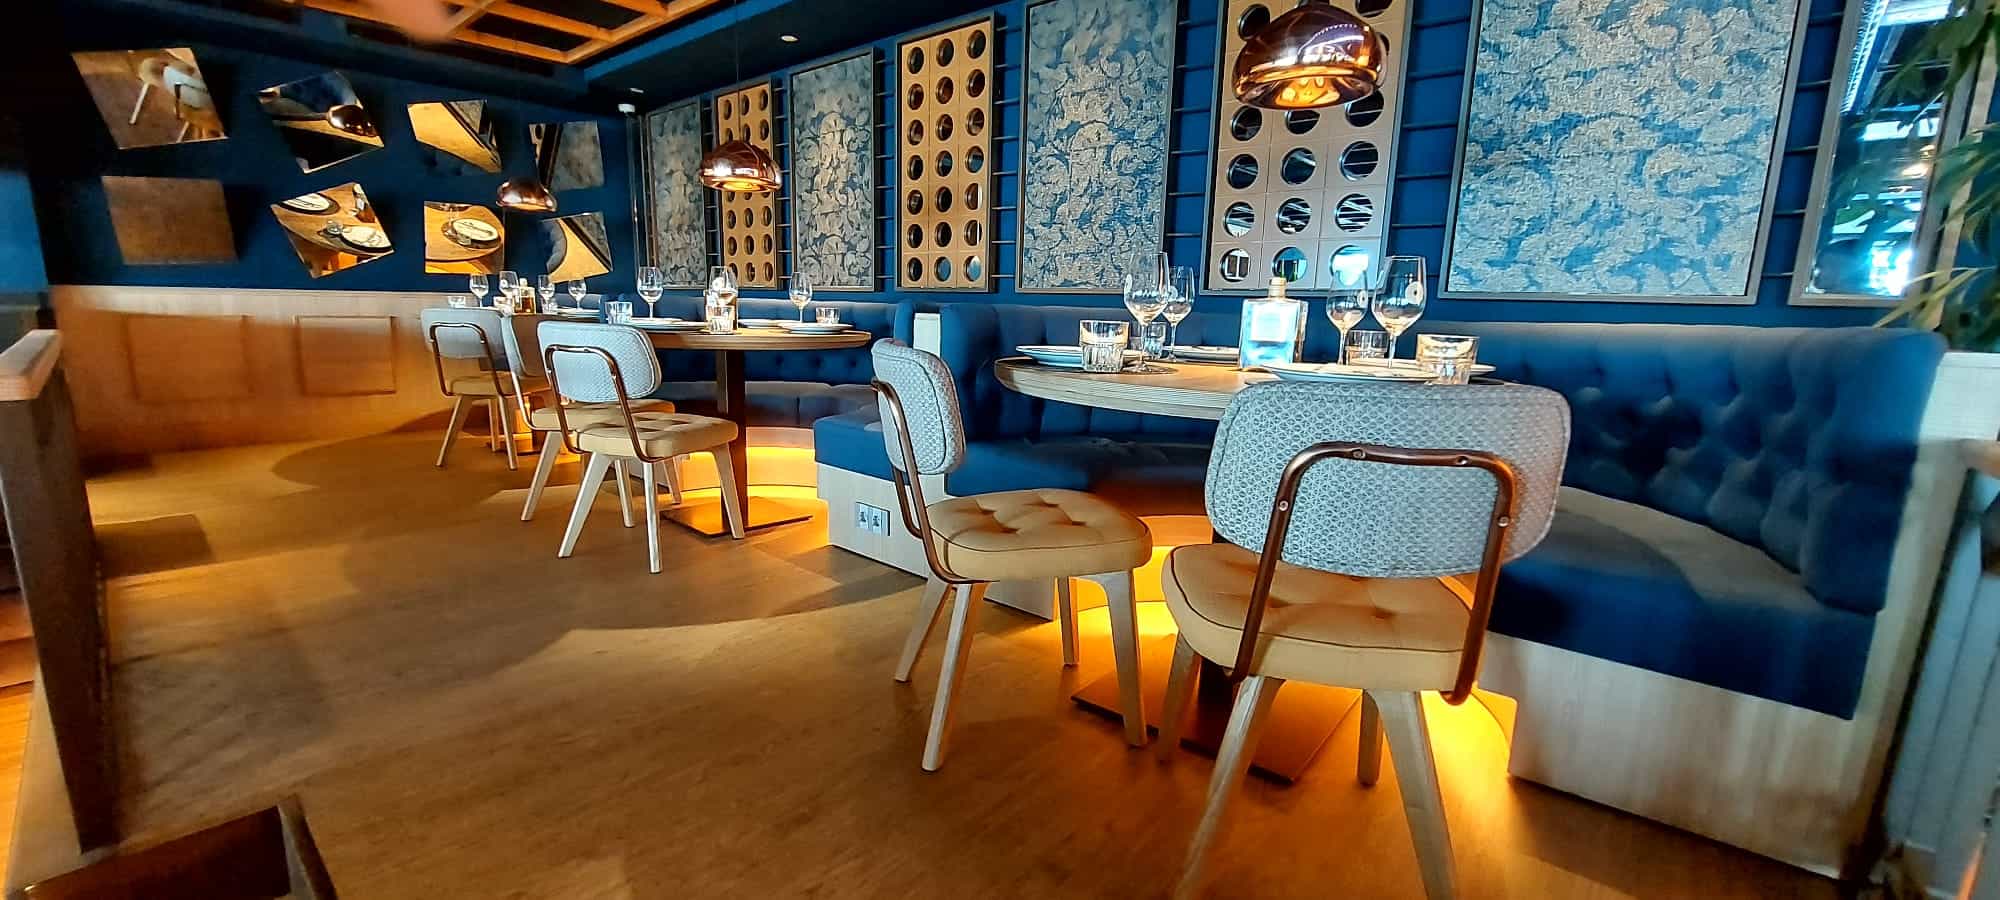 mesas, sillas y bancos de comedor restaurante suministradas por Sitamon